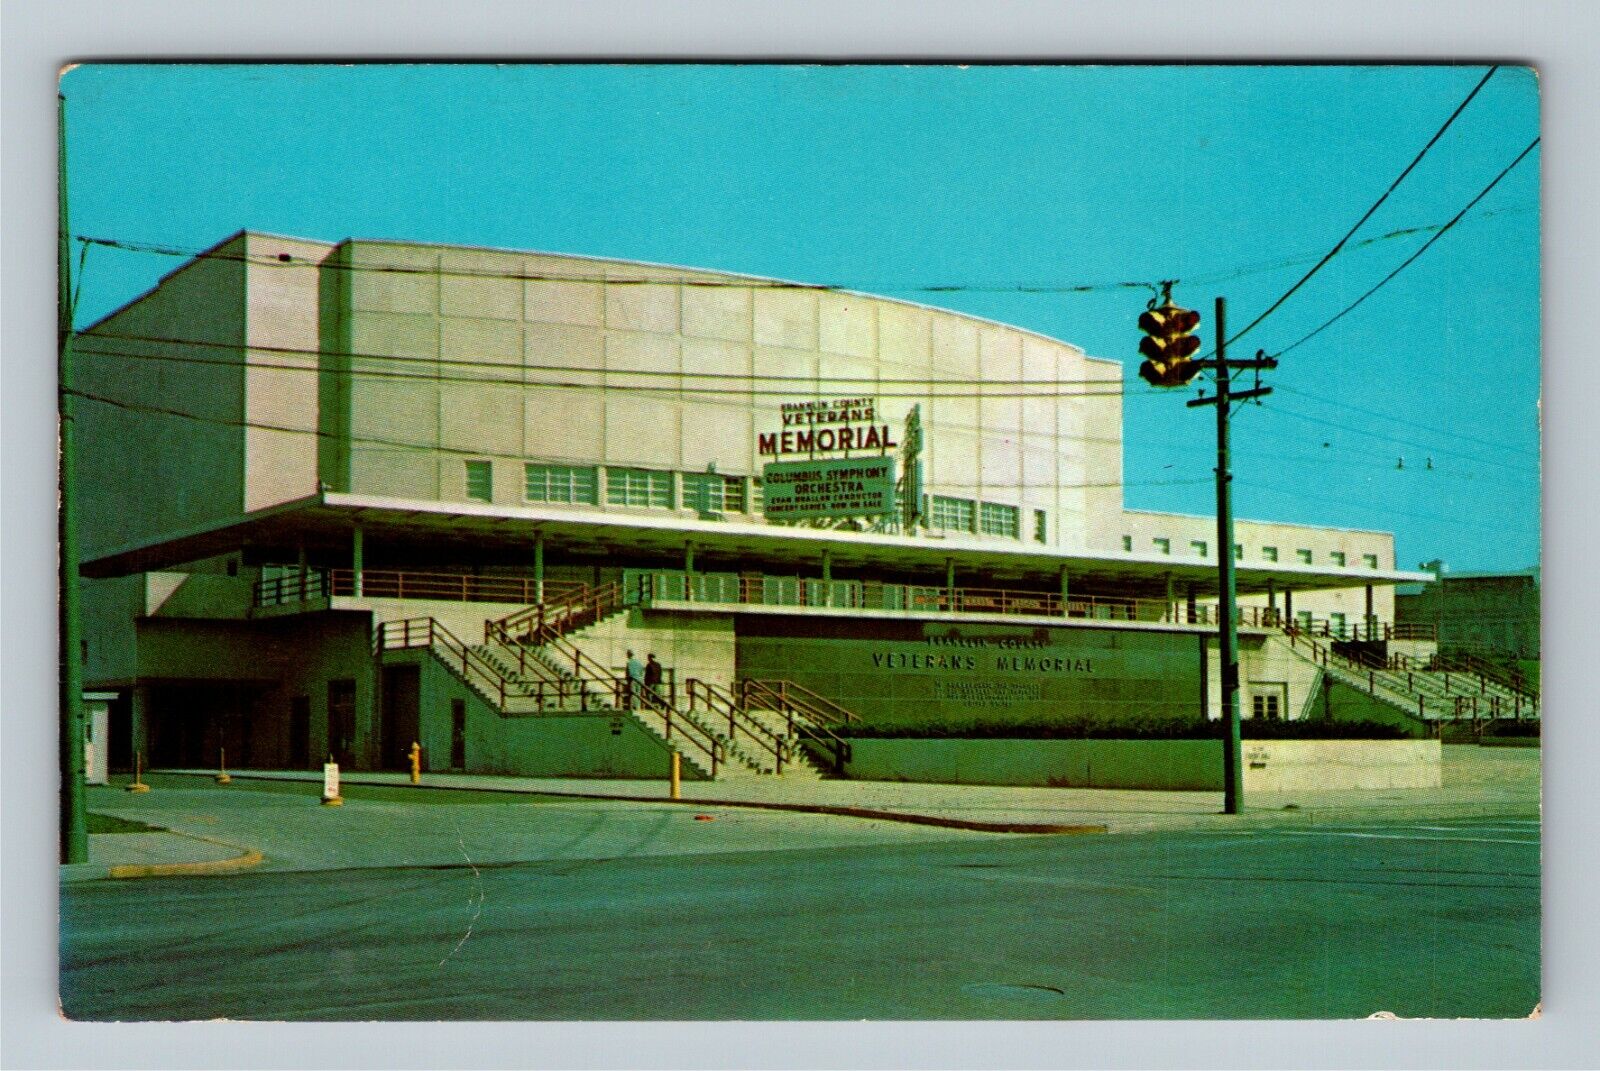 Columbus OH Veterans Memorial Auditorium Exhibition Hall Ohio Vintage Postcard